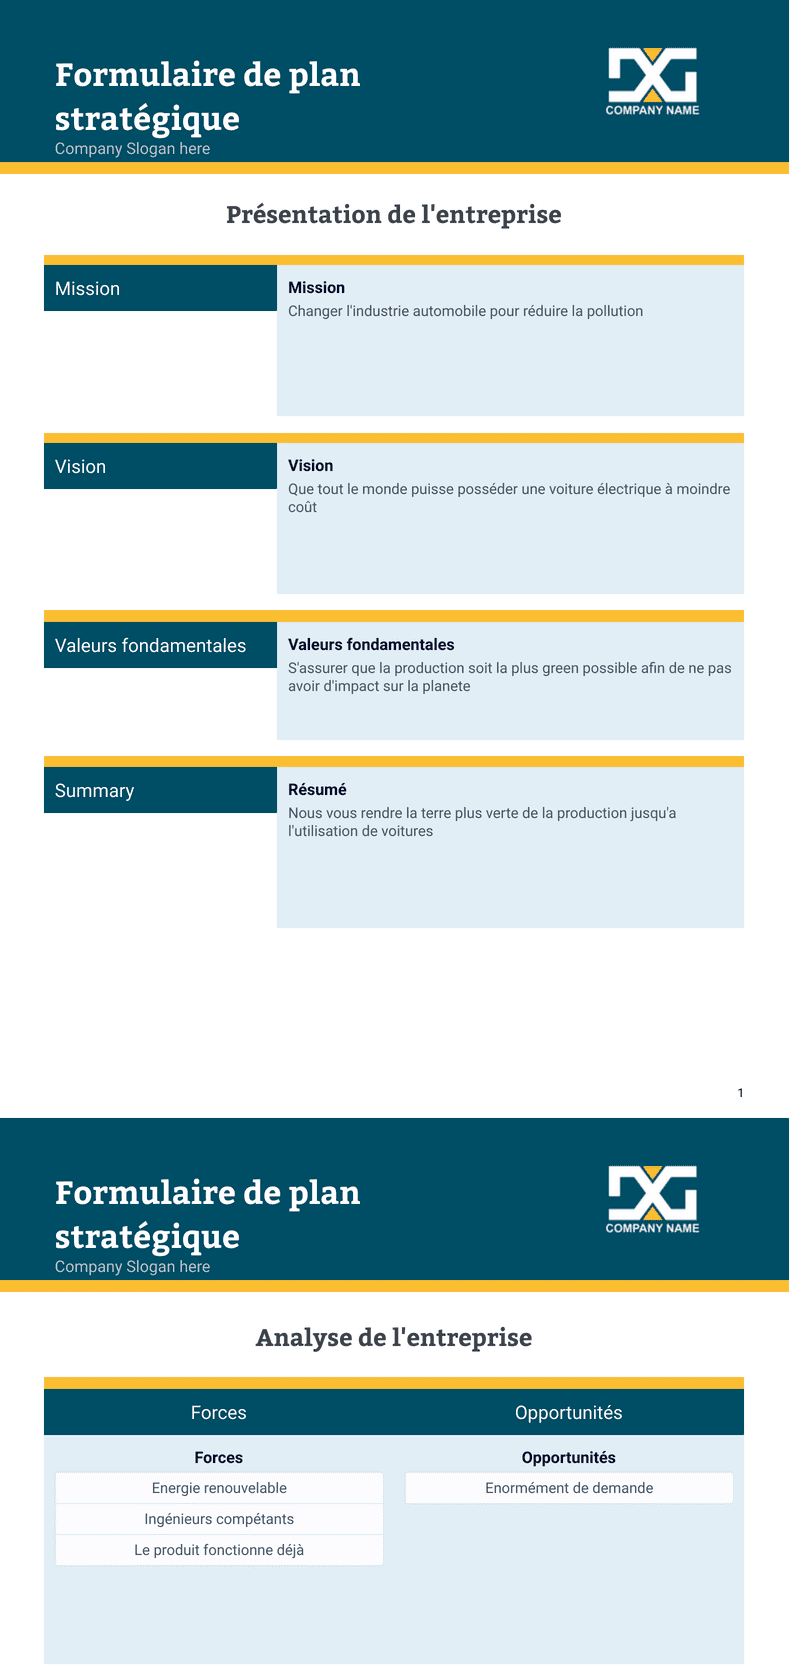 PDF Templates: Formulaire de plan stratégique